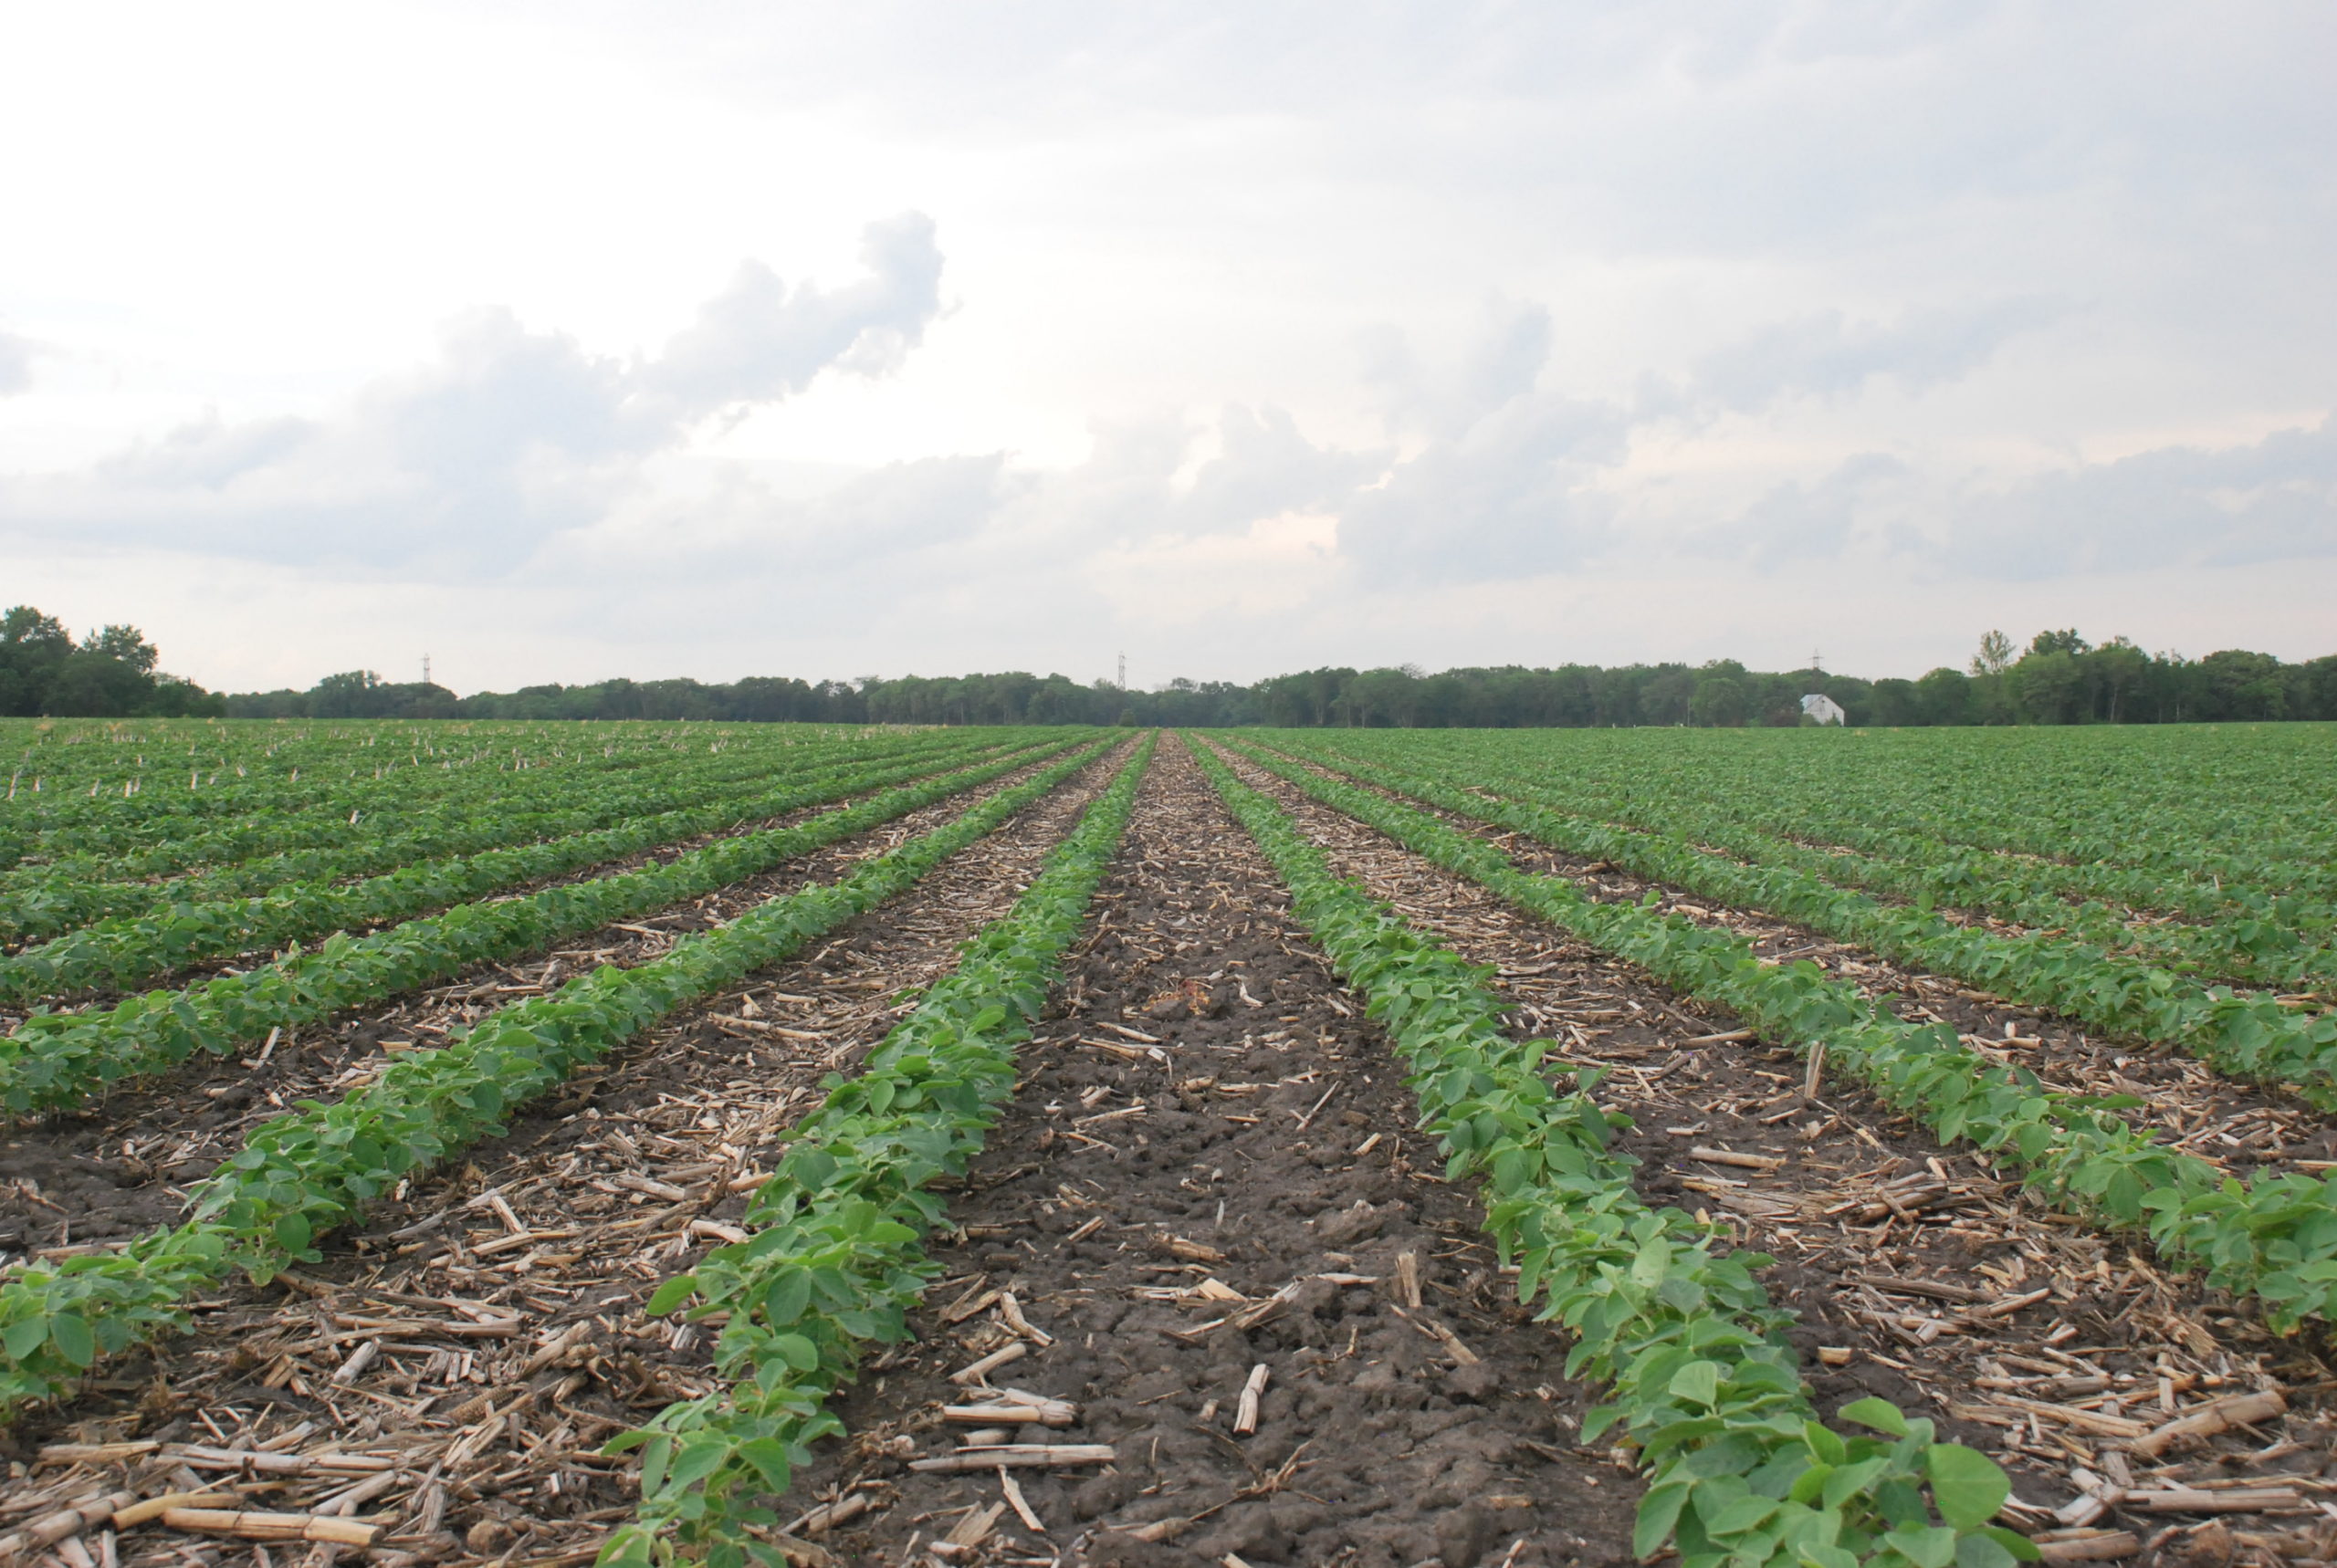 A clean soybean field early in the season